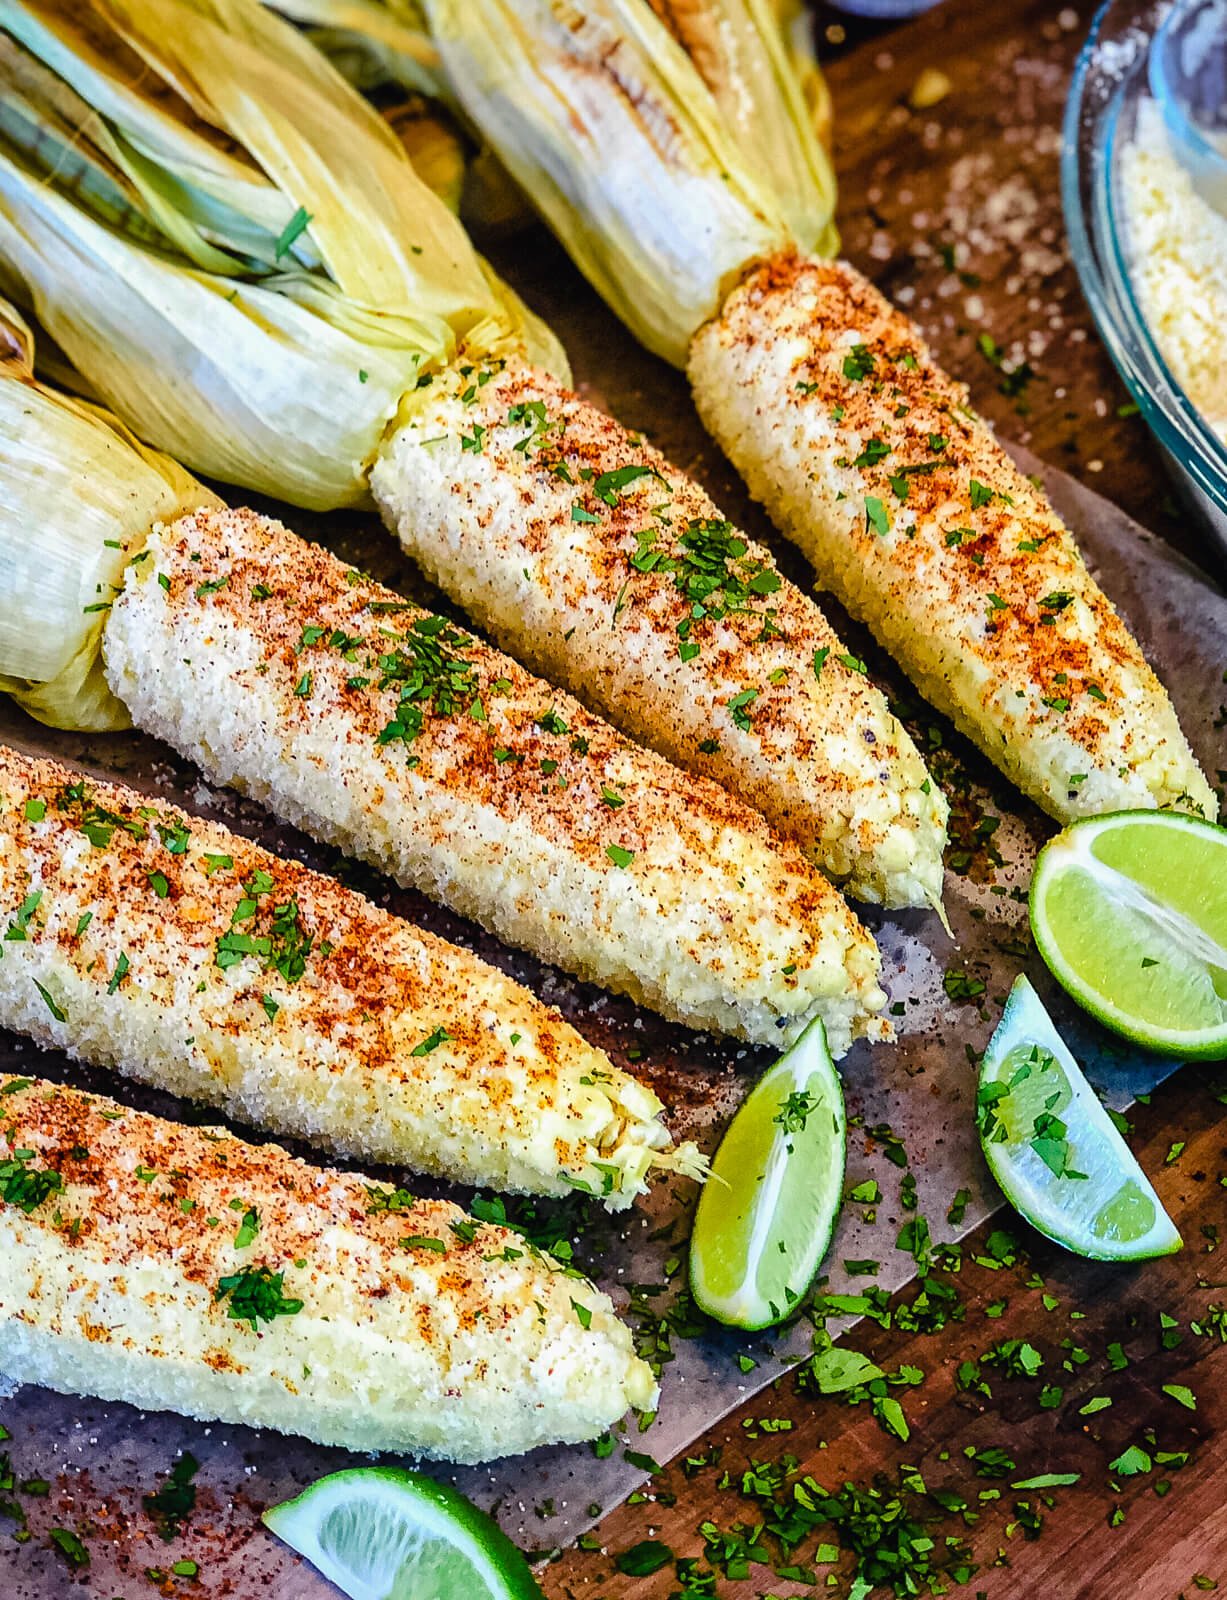 https://www.grillseeker.com/wp-content/uploads/2018/05/grilled-mexican-street-corn-seasoned-on-cutting-board.jpg